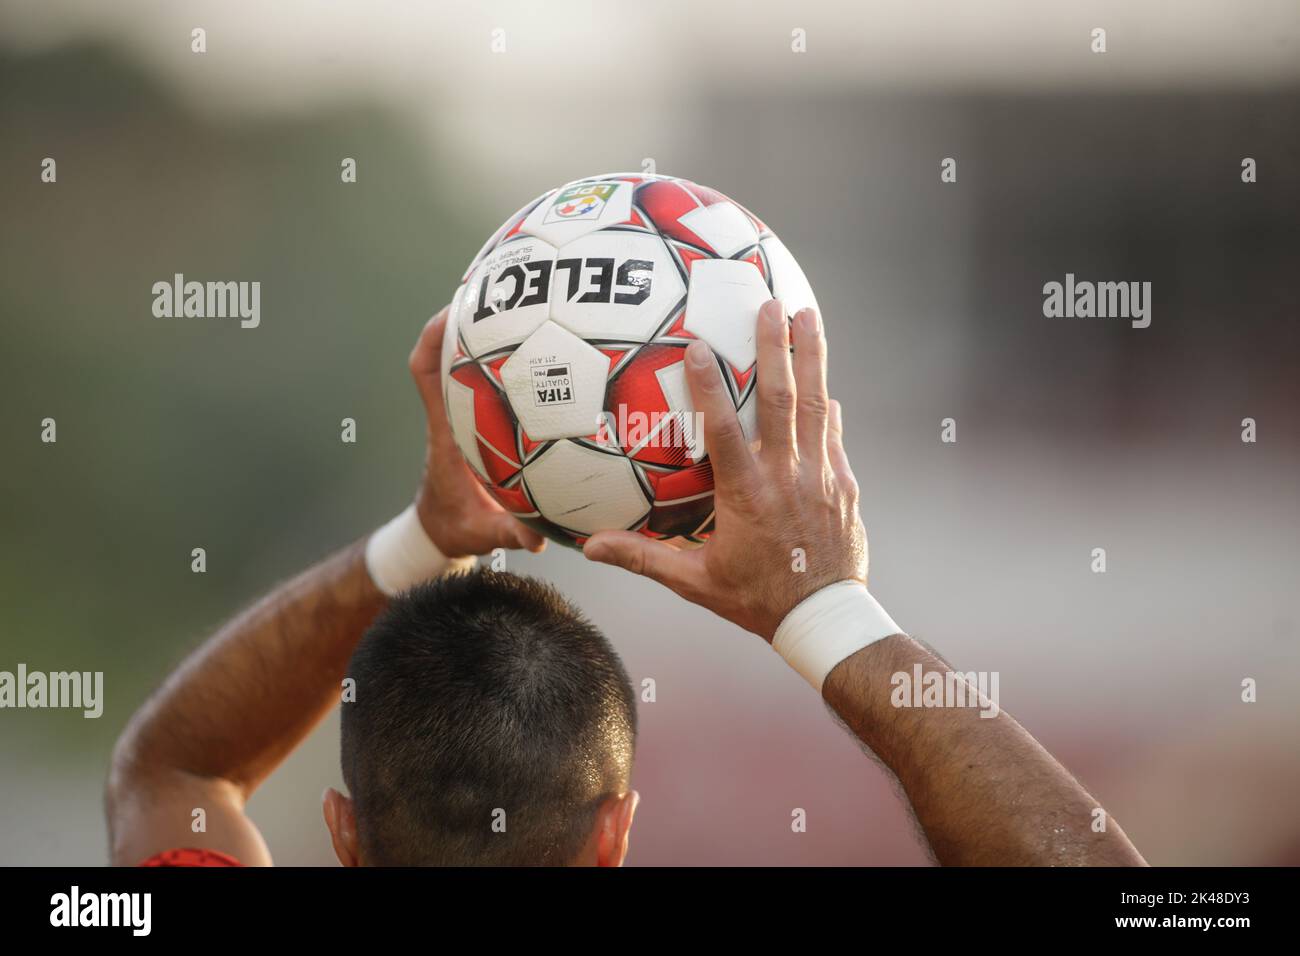 Giurgiu, Romania - 29 giugno 2020: Selezionare Brillant Super TB palla di calcio ufficiale lanciata da un giocatore durante una partita. Foto Stock